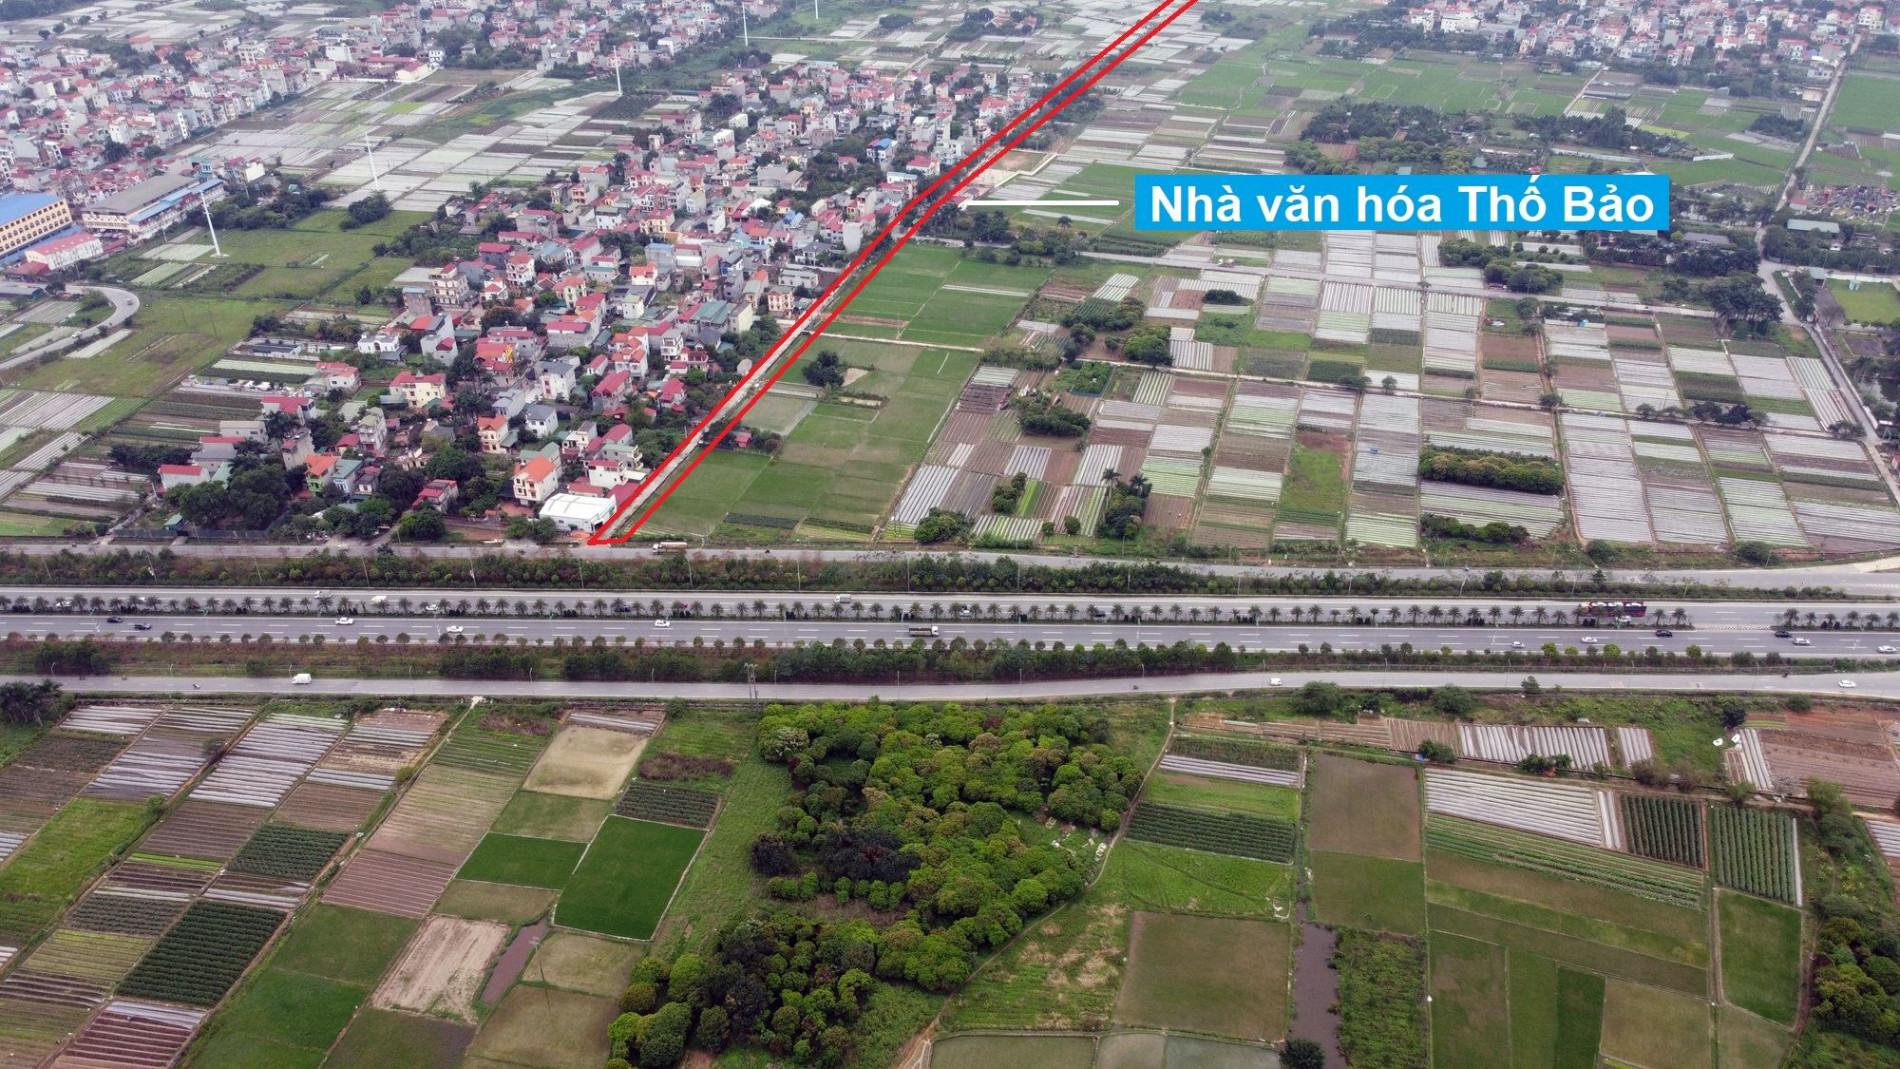 Đường sẽ mở theo quy hoạch ở xã Vân Nội, Đông Anh, Hà Nội (phần 3)